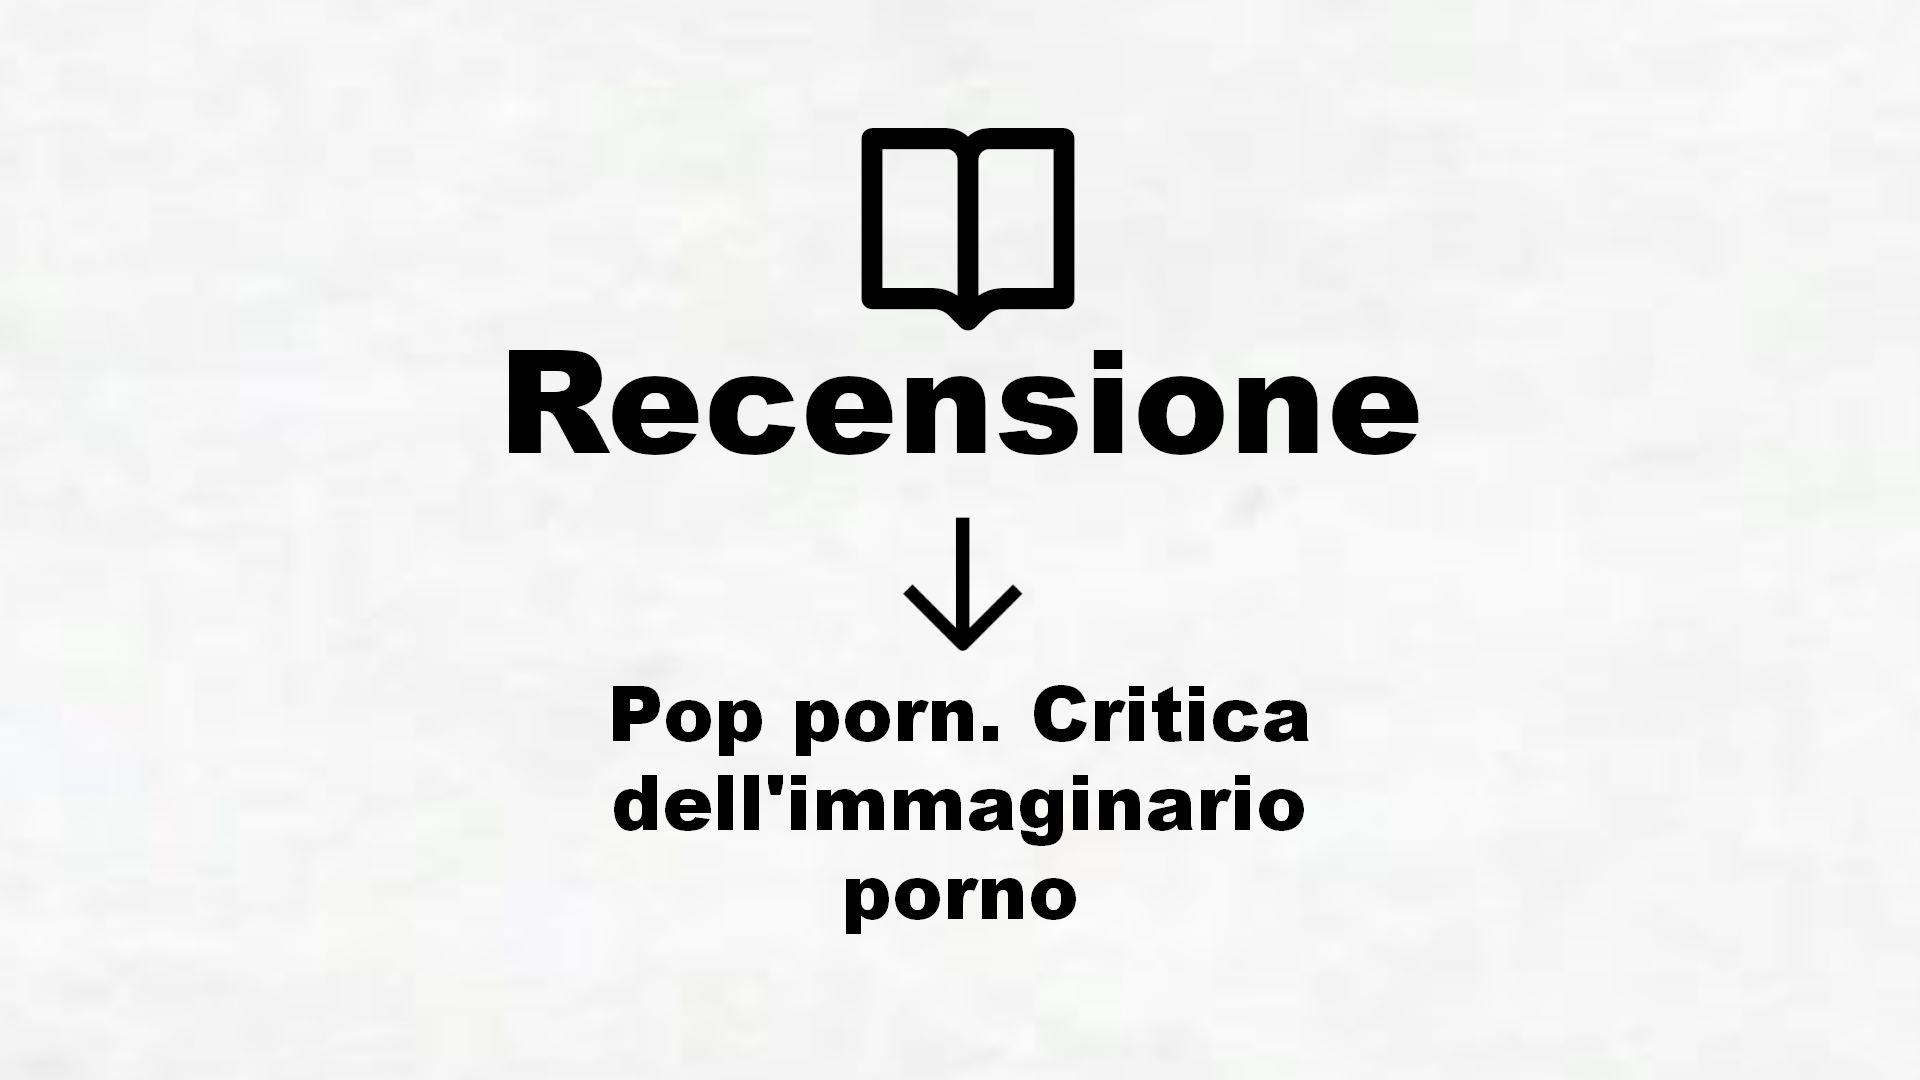 Pop porn. Critica dell’immaginario porno – Recensione Libro